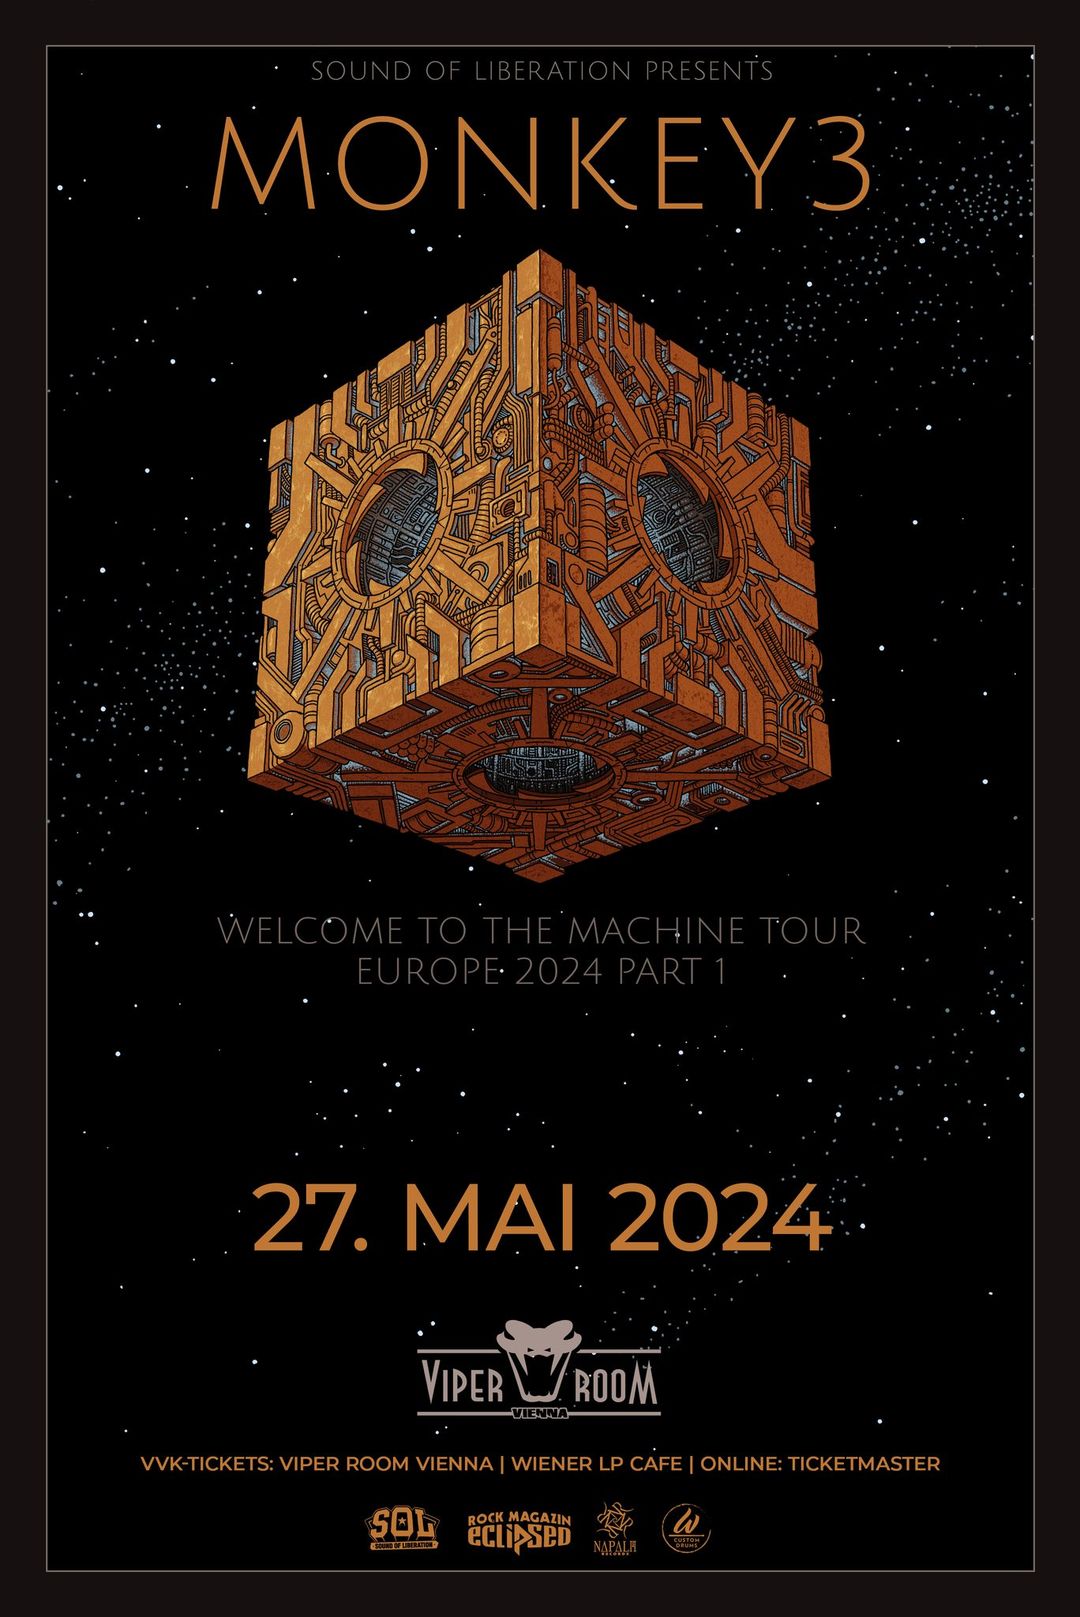 MONKEY3 / FRANTIŠEK / AEROLITH am 27. May 2024 @ Viper Room.